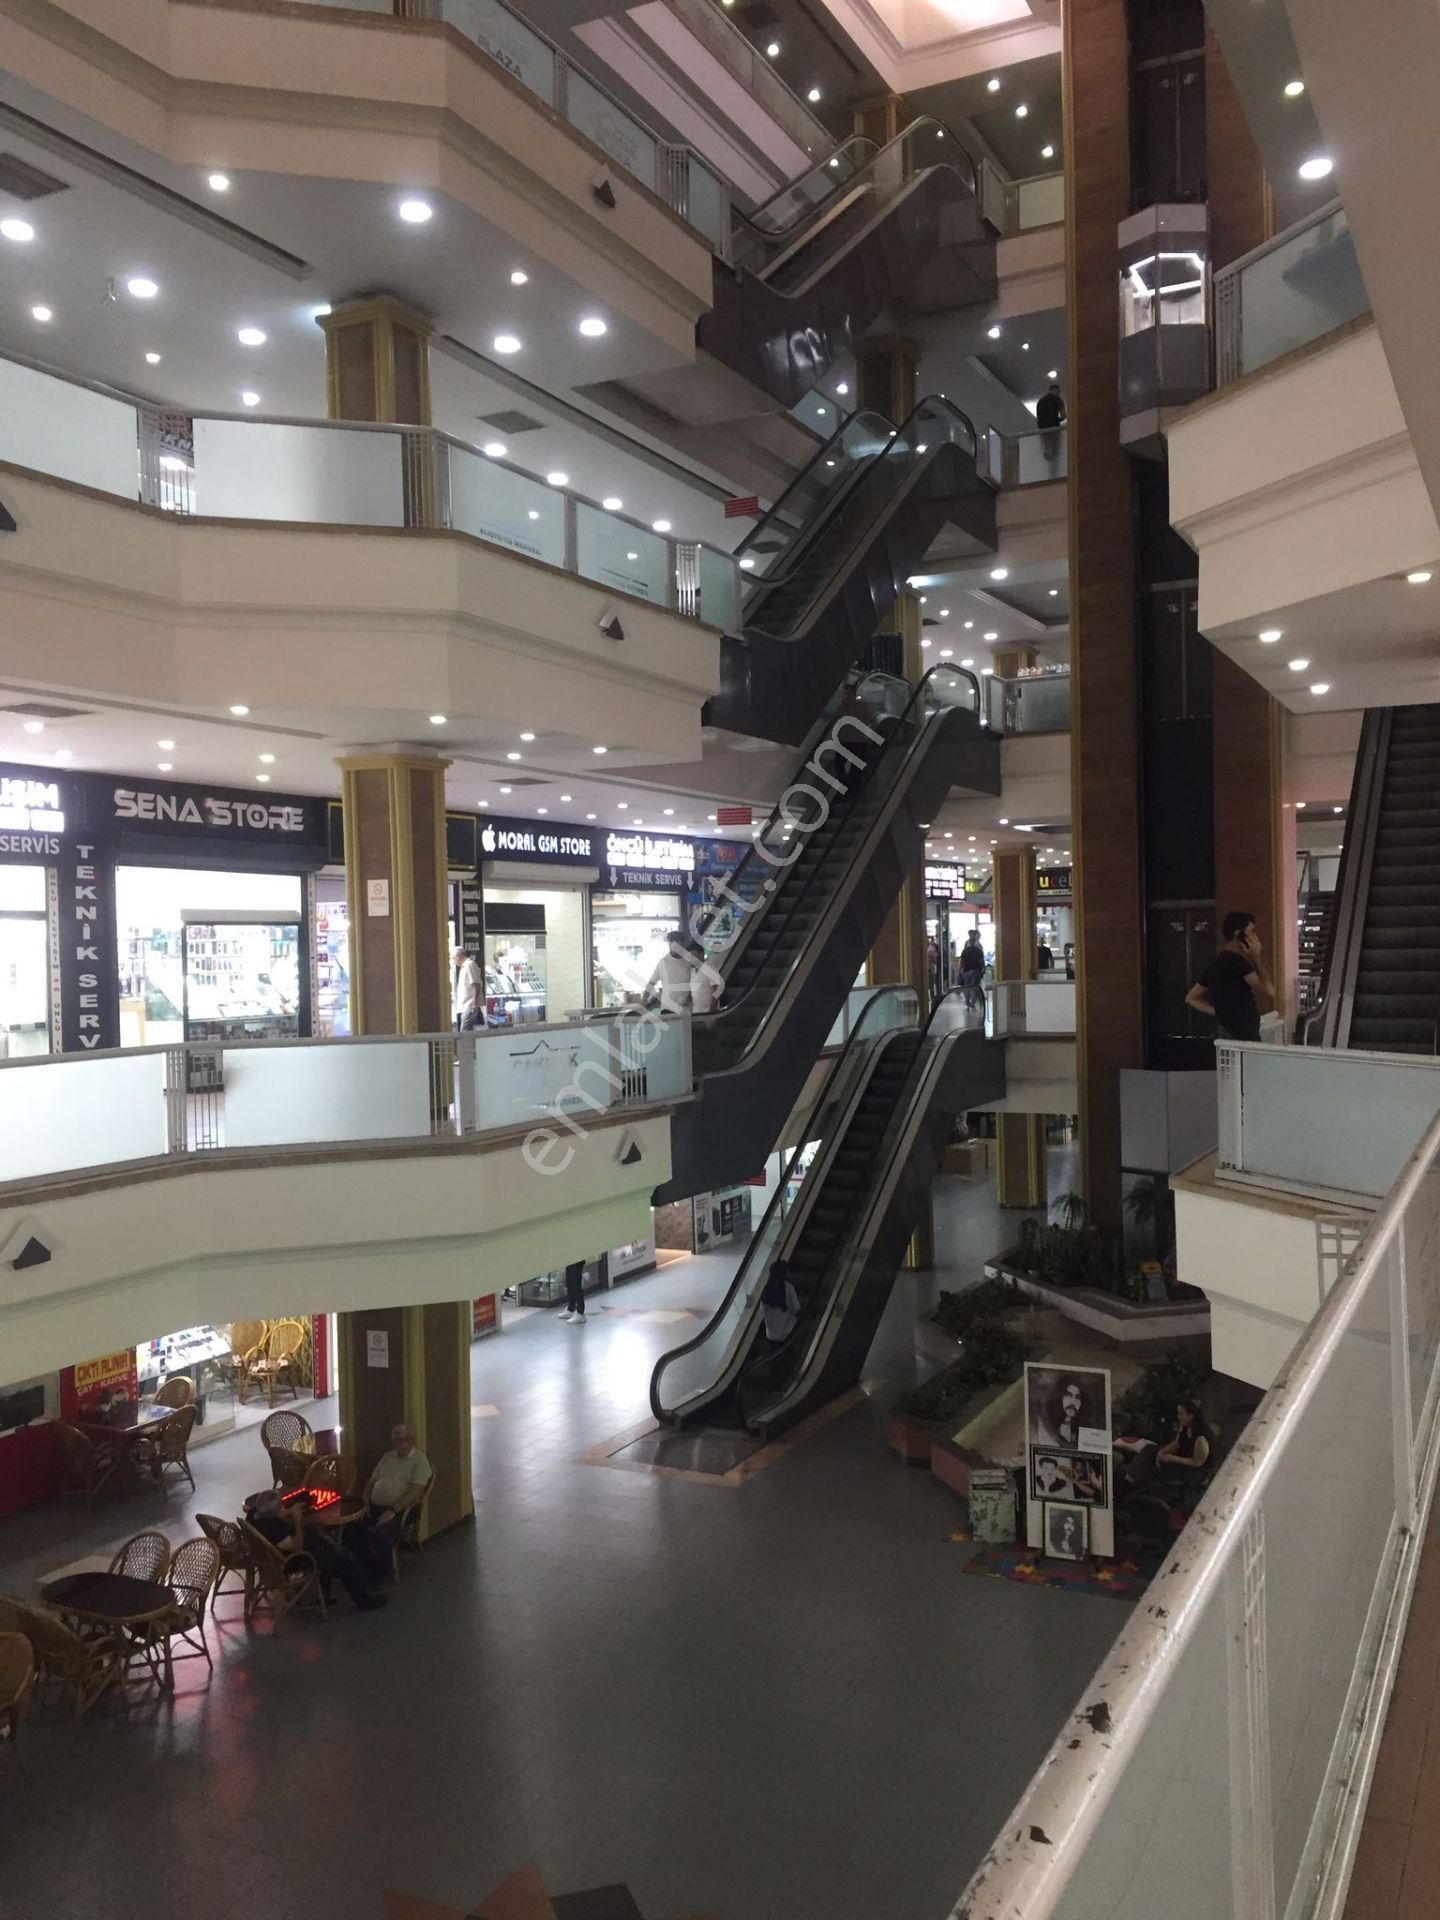 Seyhan Kuruköprü Satılık Dükkan & Mağaza  Adana Çakmak Plaza Satılık Dükkan Ofis